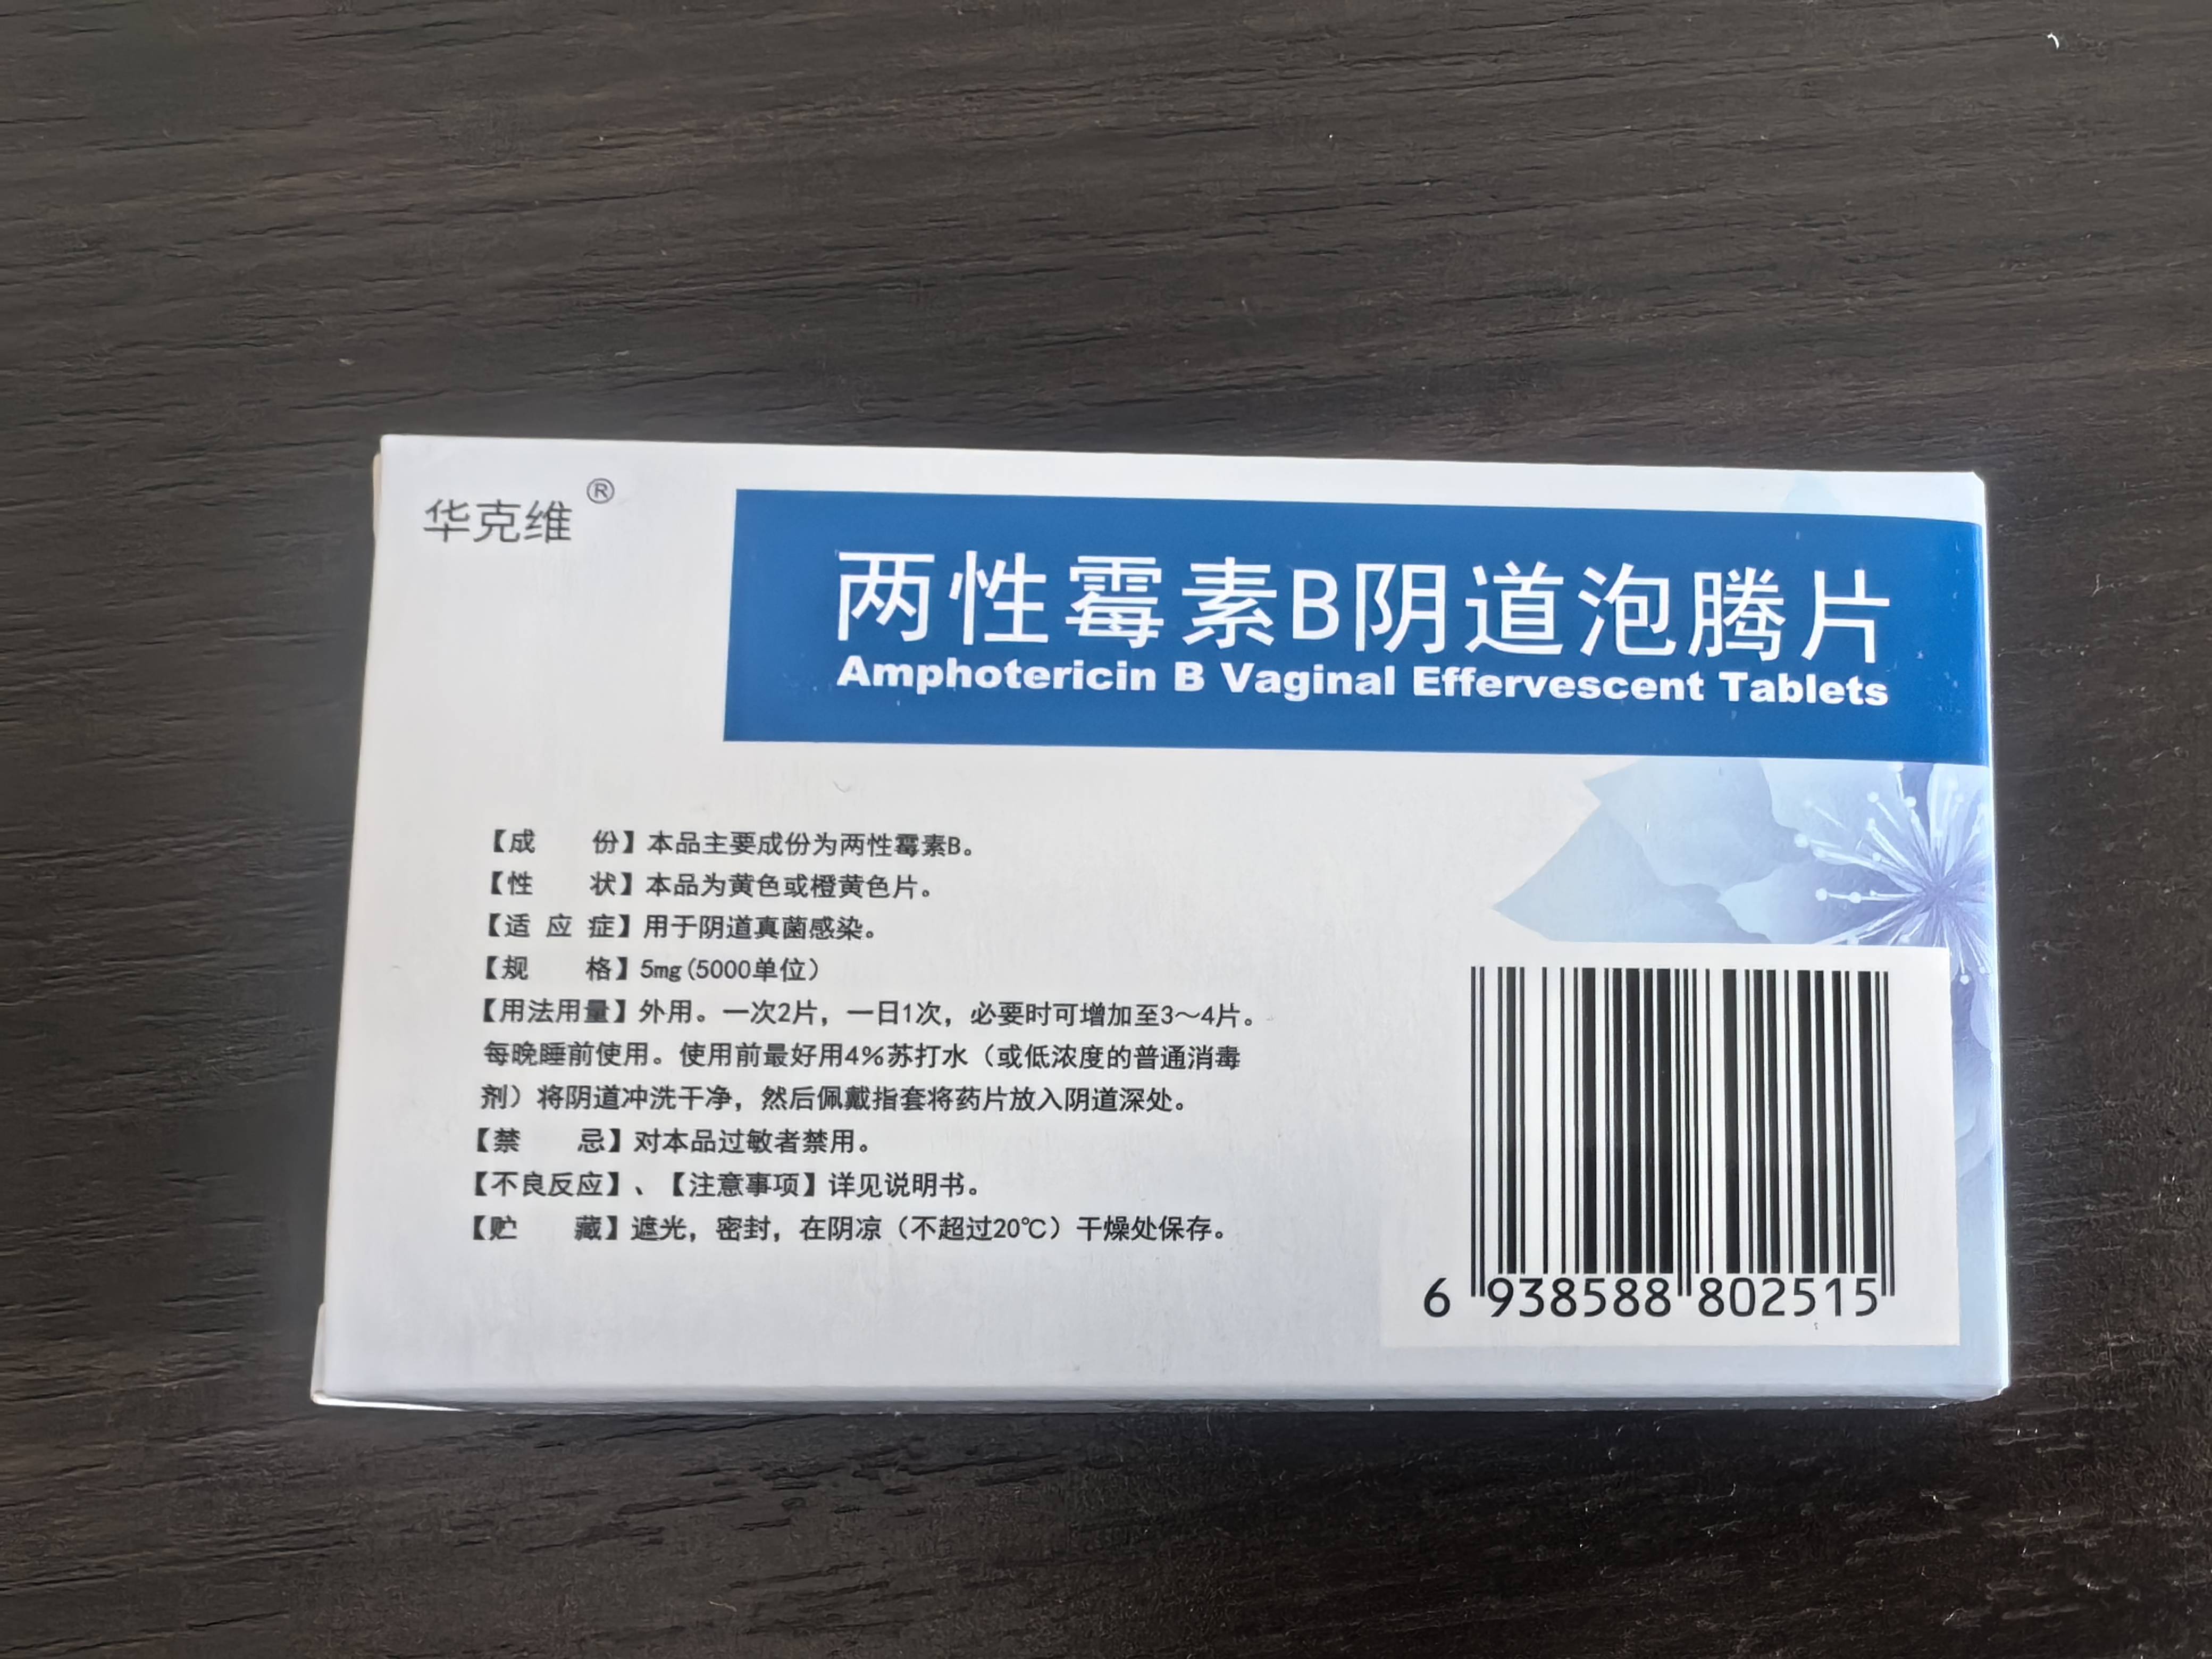 华克维两性霉素b阴道泡腾片可用于各类真菌感染,水溶性原辅料,易清洁